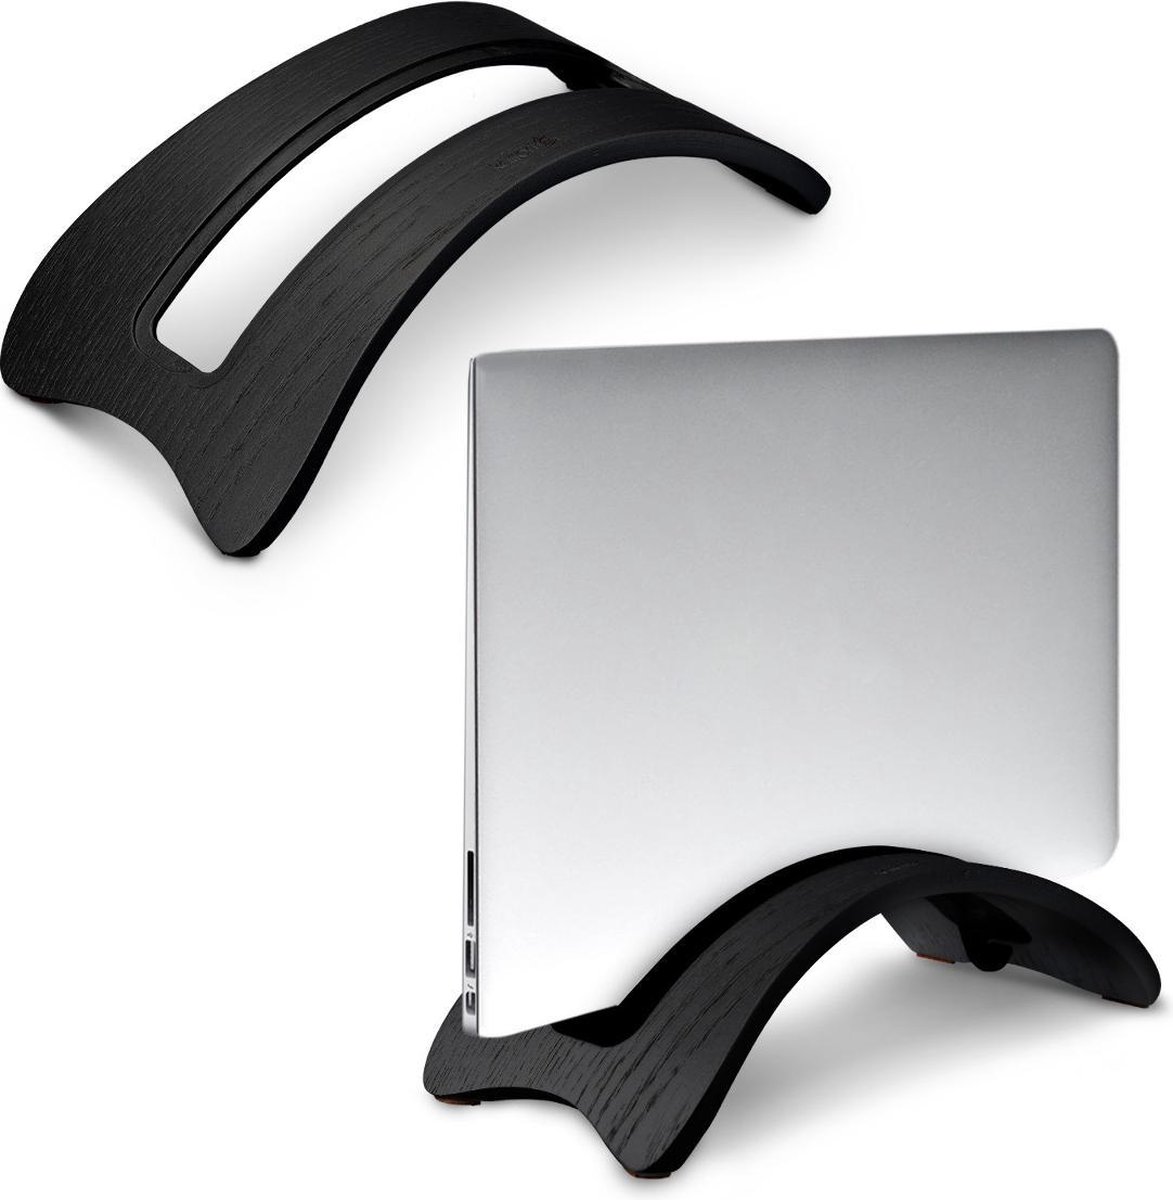 kalibri verticale laptopstandaard voor MacBook - Houten standaard voor laptops - Docking station - Verstelbaar voor laptops tot 2,6 cm dikte - Zwart